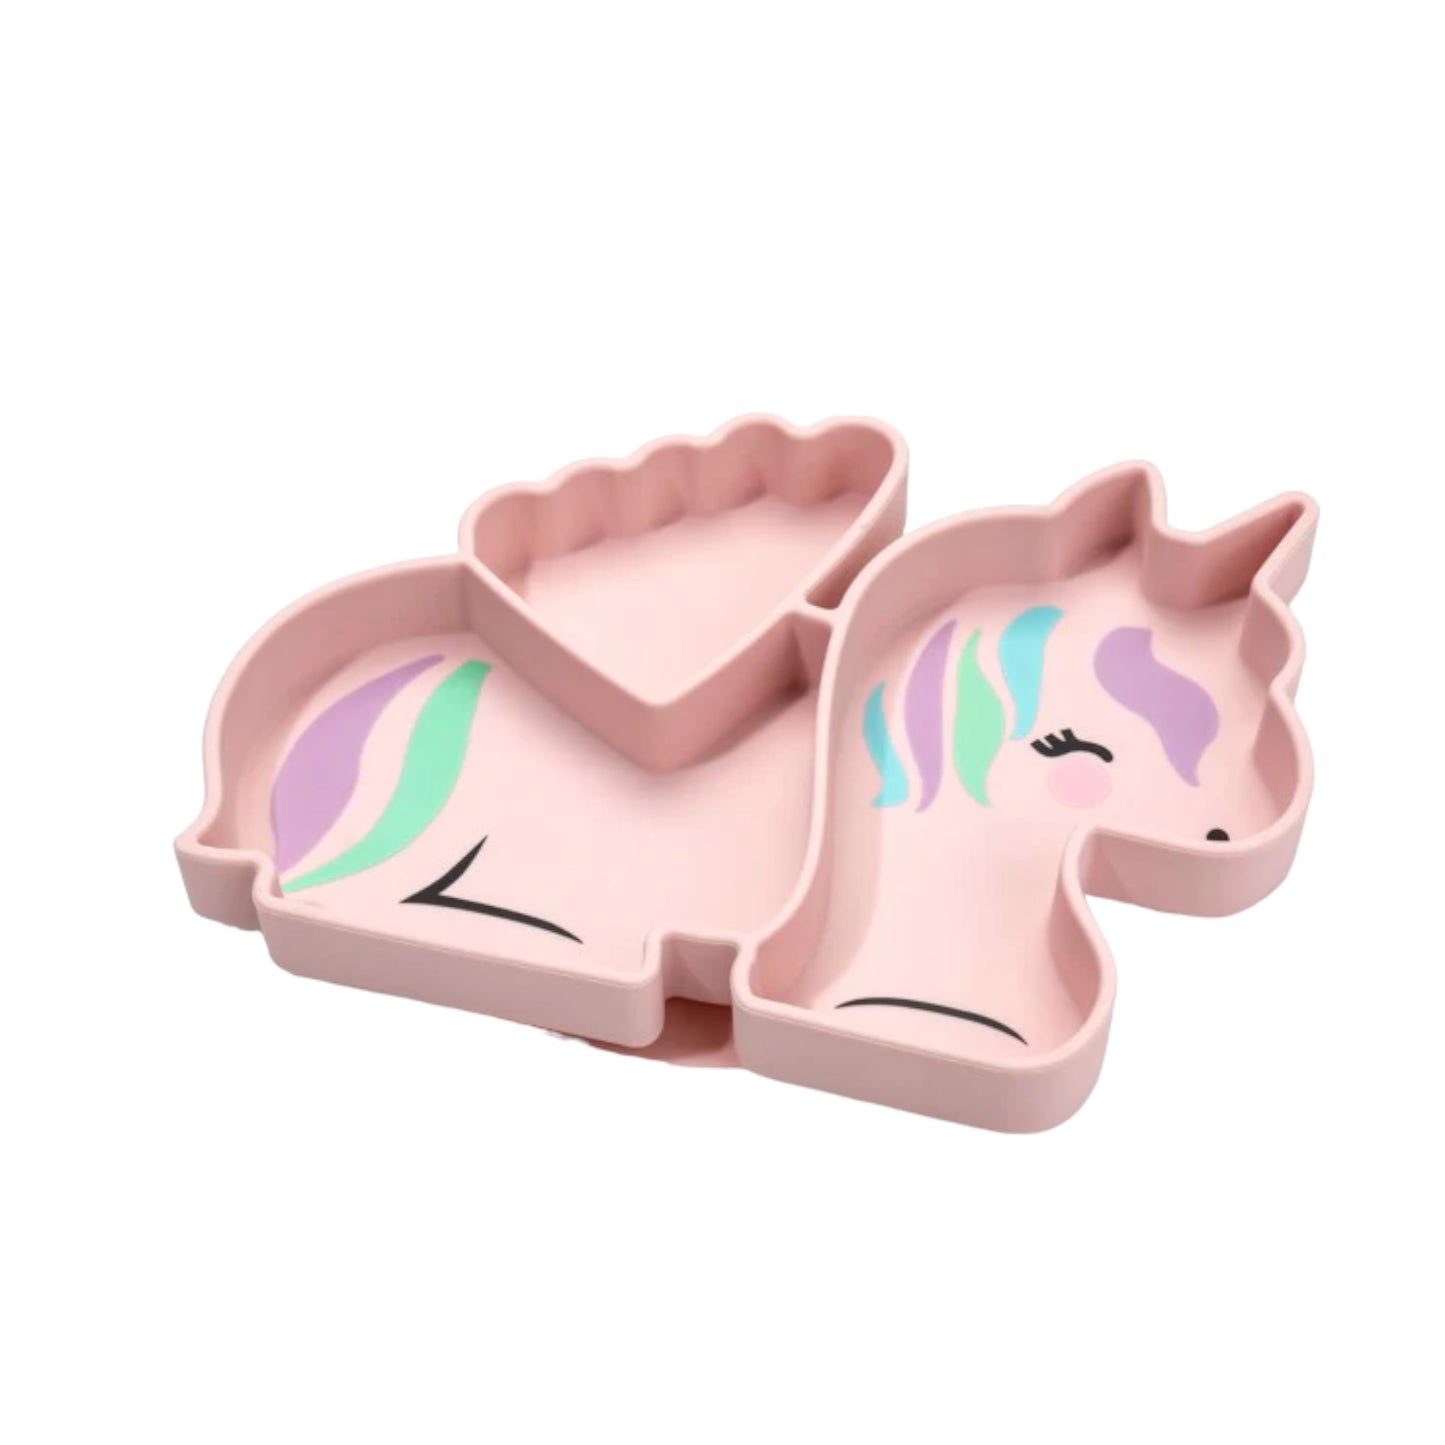 Plato de silicona con succión, diseño unicornio - Melii